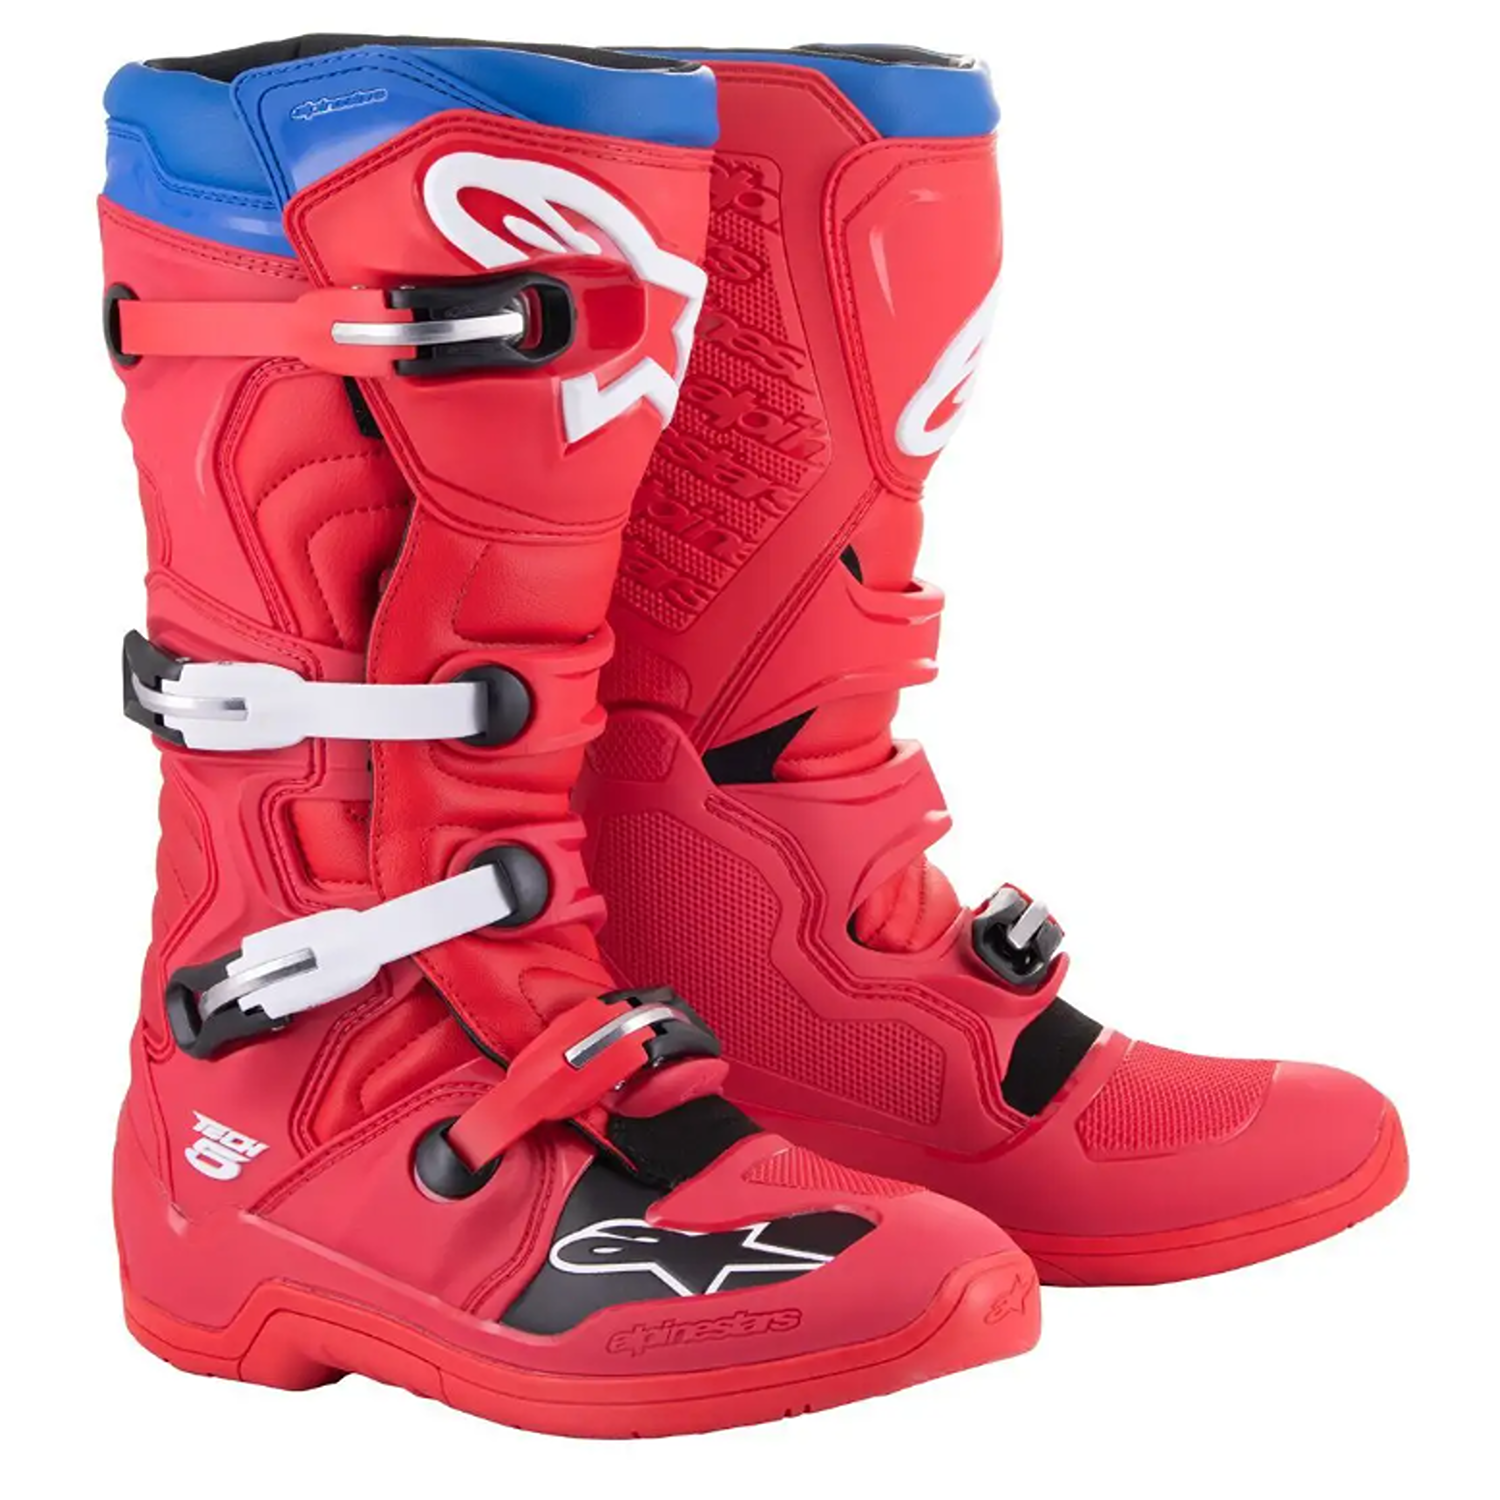 Image of Alpinestars Tech 5 Boots Bright Red Dark Red Blue Größe US 10